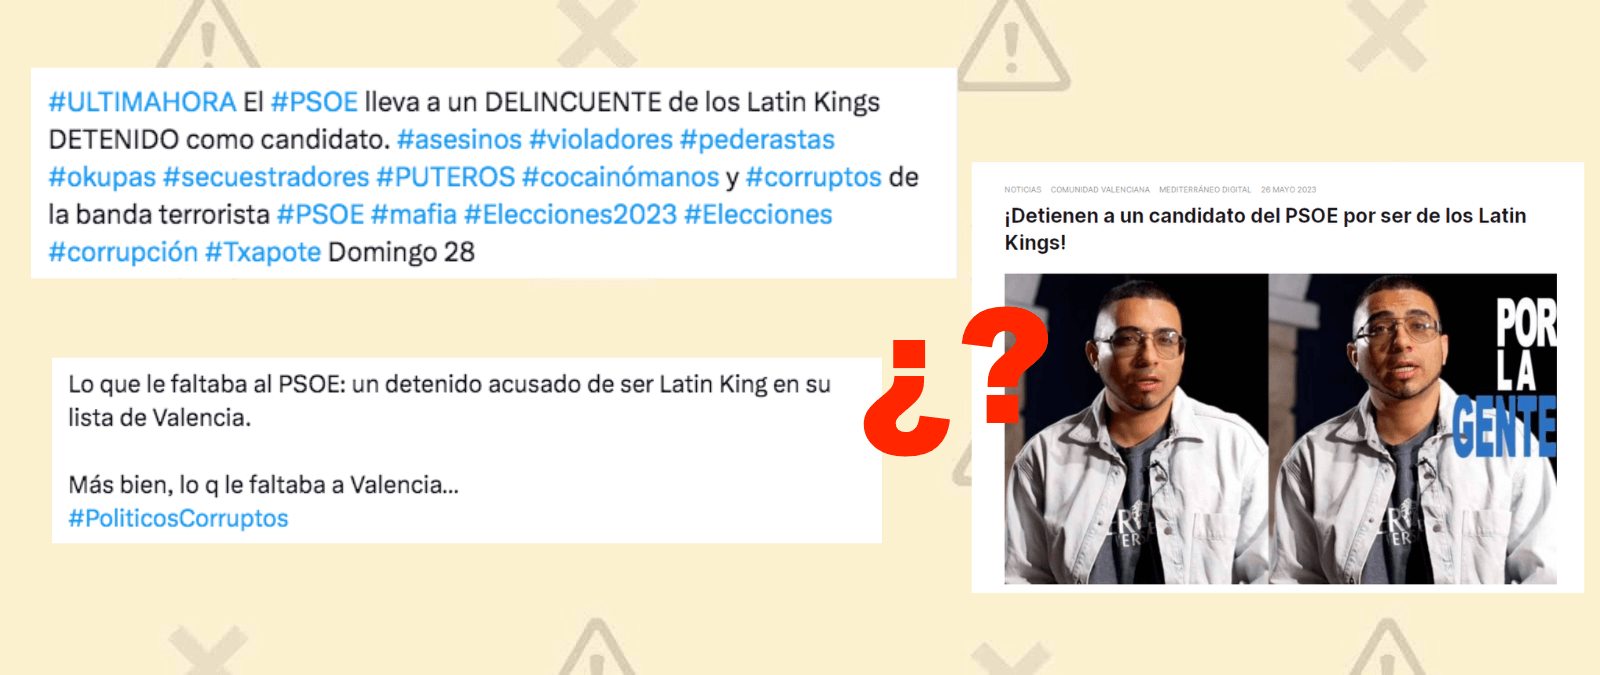 ¿Qué sabemos de la detención y pertenencia a los “Latin Kings” del excandidato del PSOE en Valencia, Camilo Monsalve?